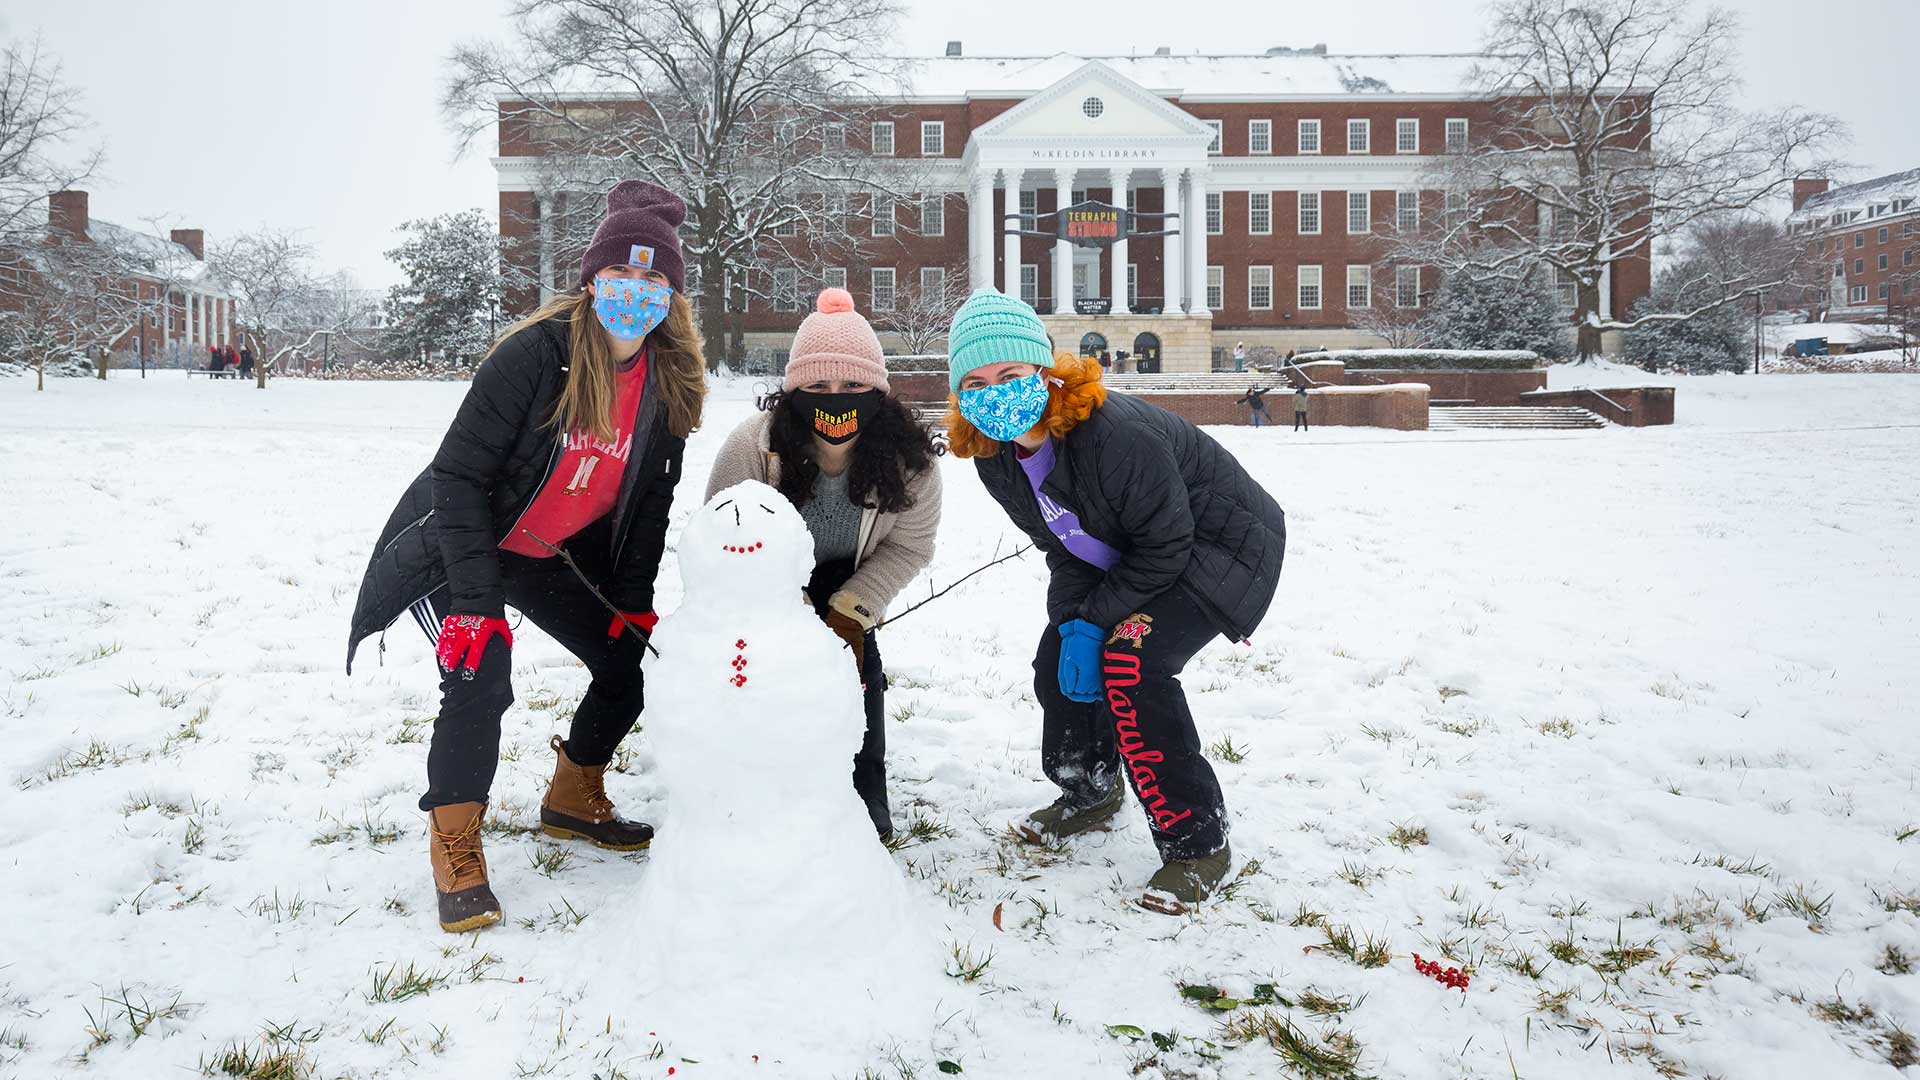 Students build small snowman on McKeldin Mall